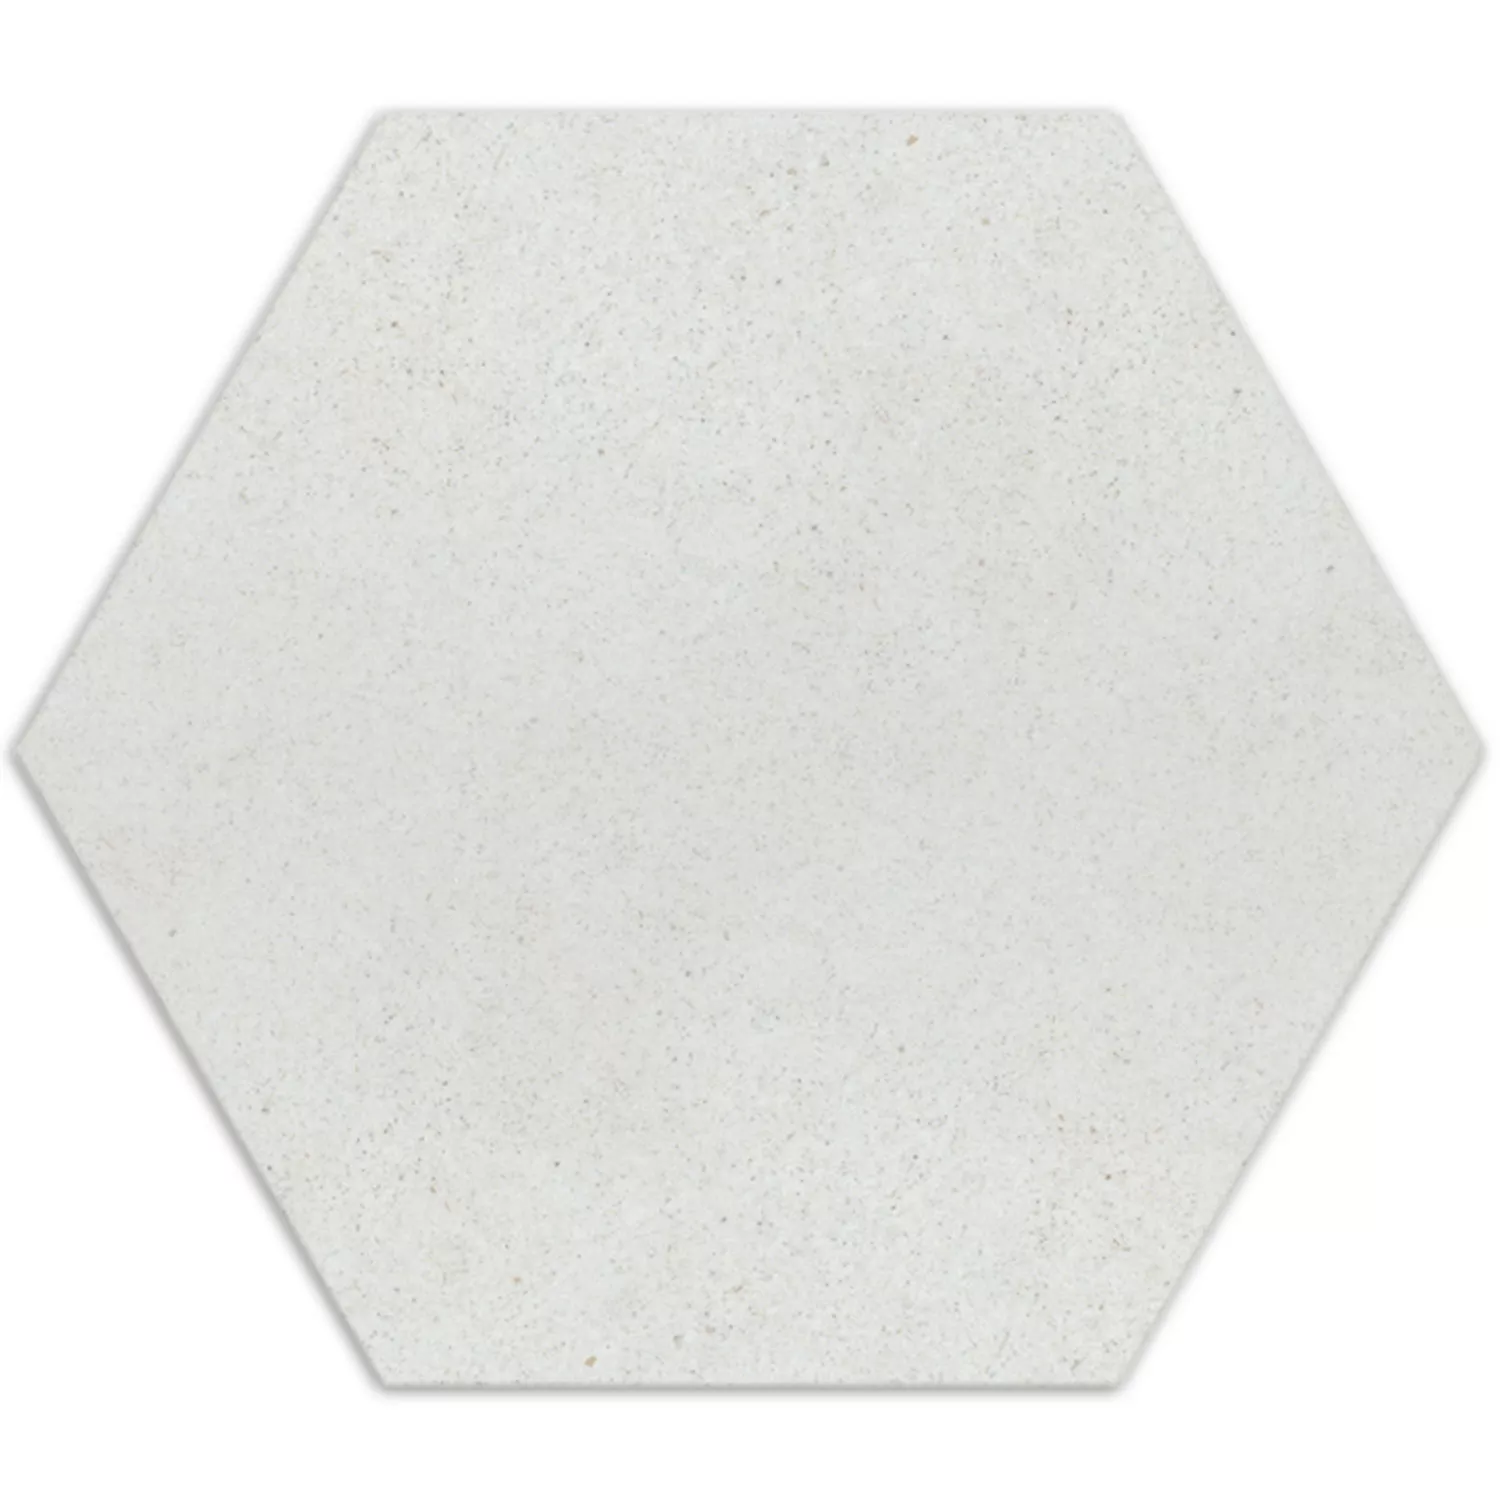 Sample Cement Tiles Optic Hexagon Floor Tiles Alicante Blanco